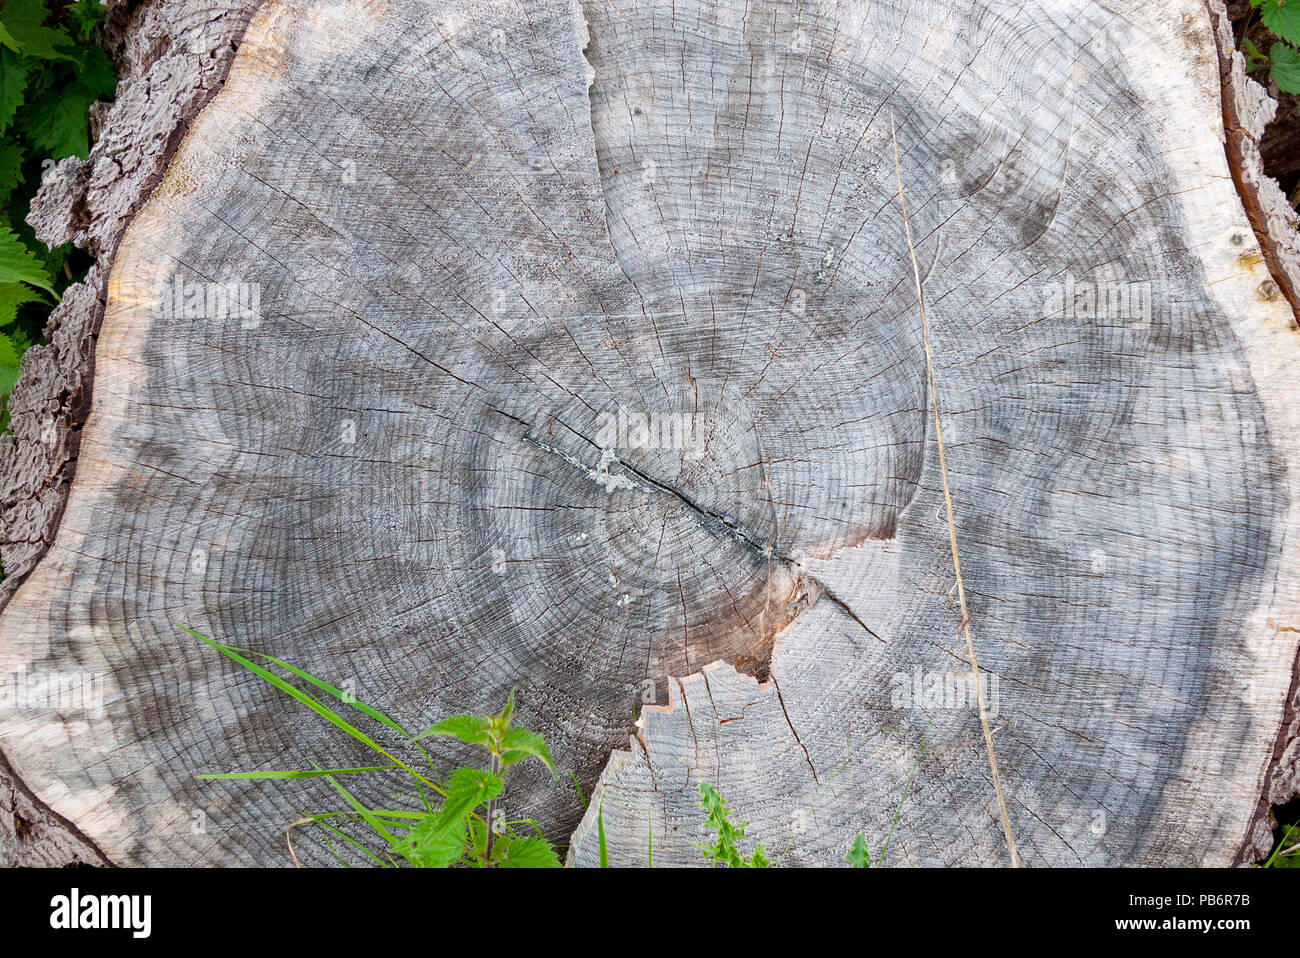 Couper un arbre montrant son histoire dans les cernes annuels,UK. Banque D'Images